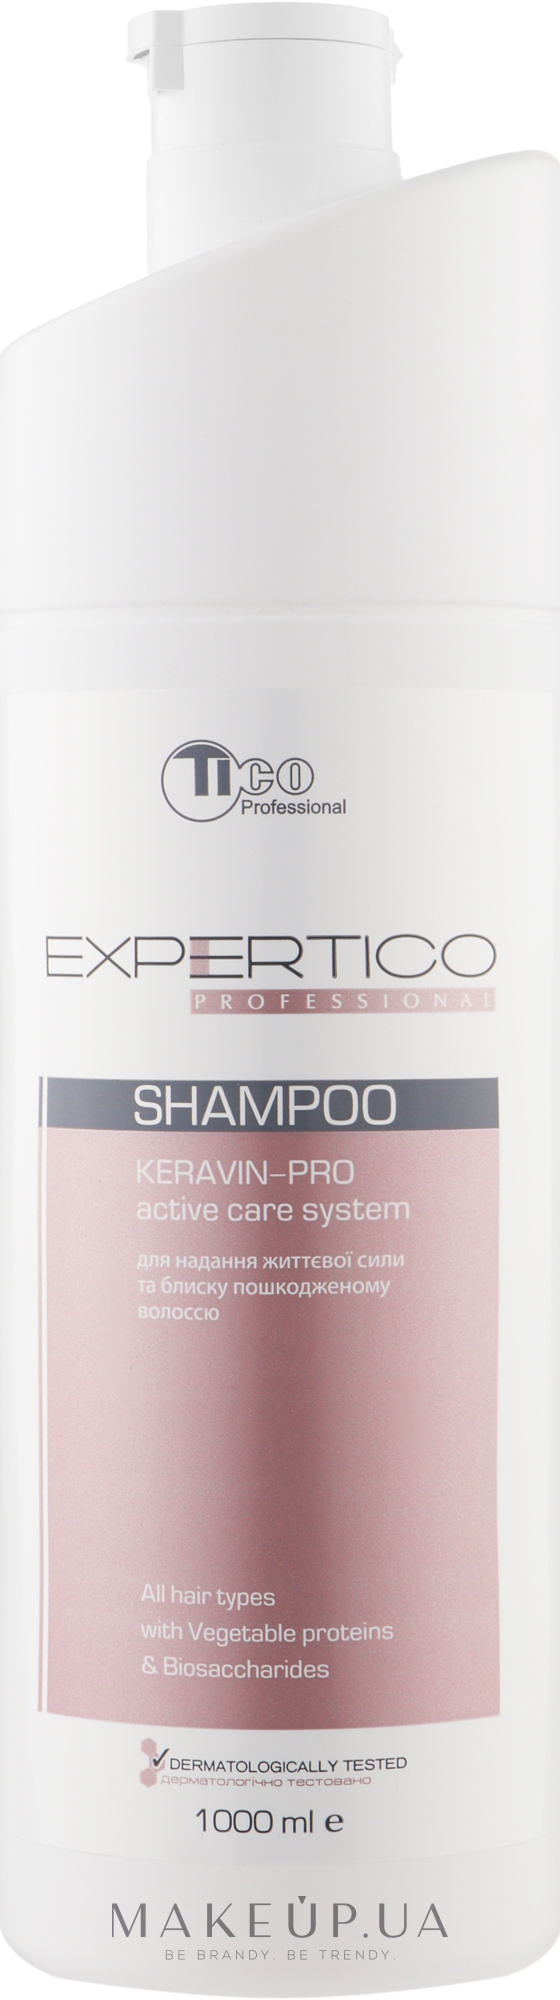 Шампунь для блеска и силы волос - Tico Professional Expertico Keravin-pro — фото 1000ml